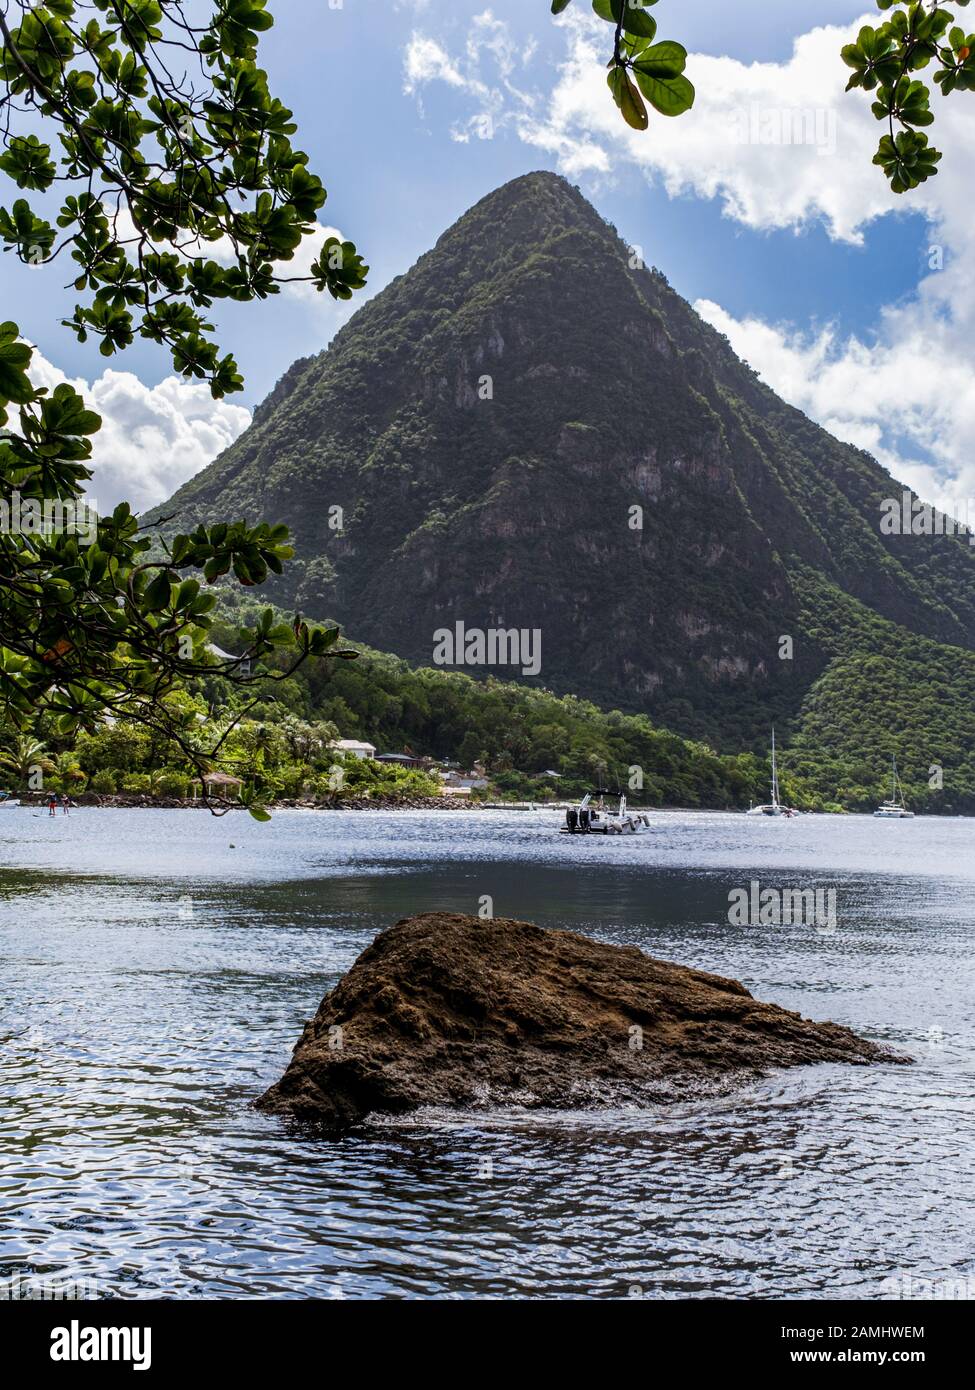 Vue Du Gros Piton Sur La Baie De Piton, Site Classé Au Patrimoine Mondial De L'Unesco, Sainte-Lucie, Antilles, Caraïbes Banque D'Images